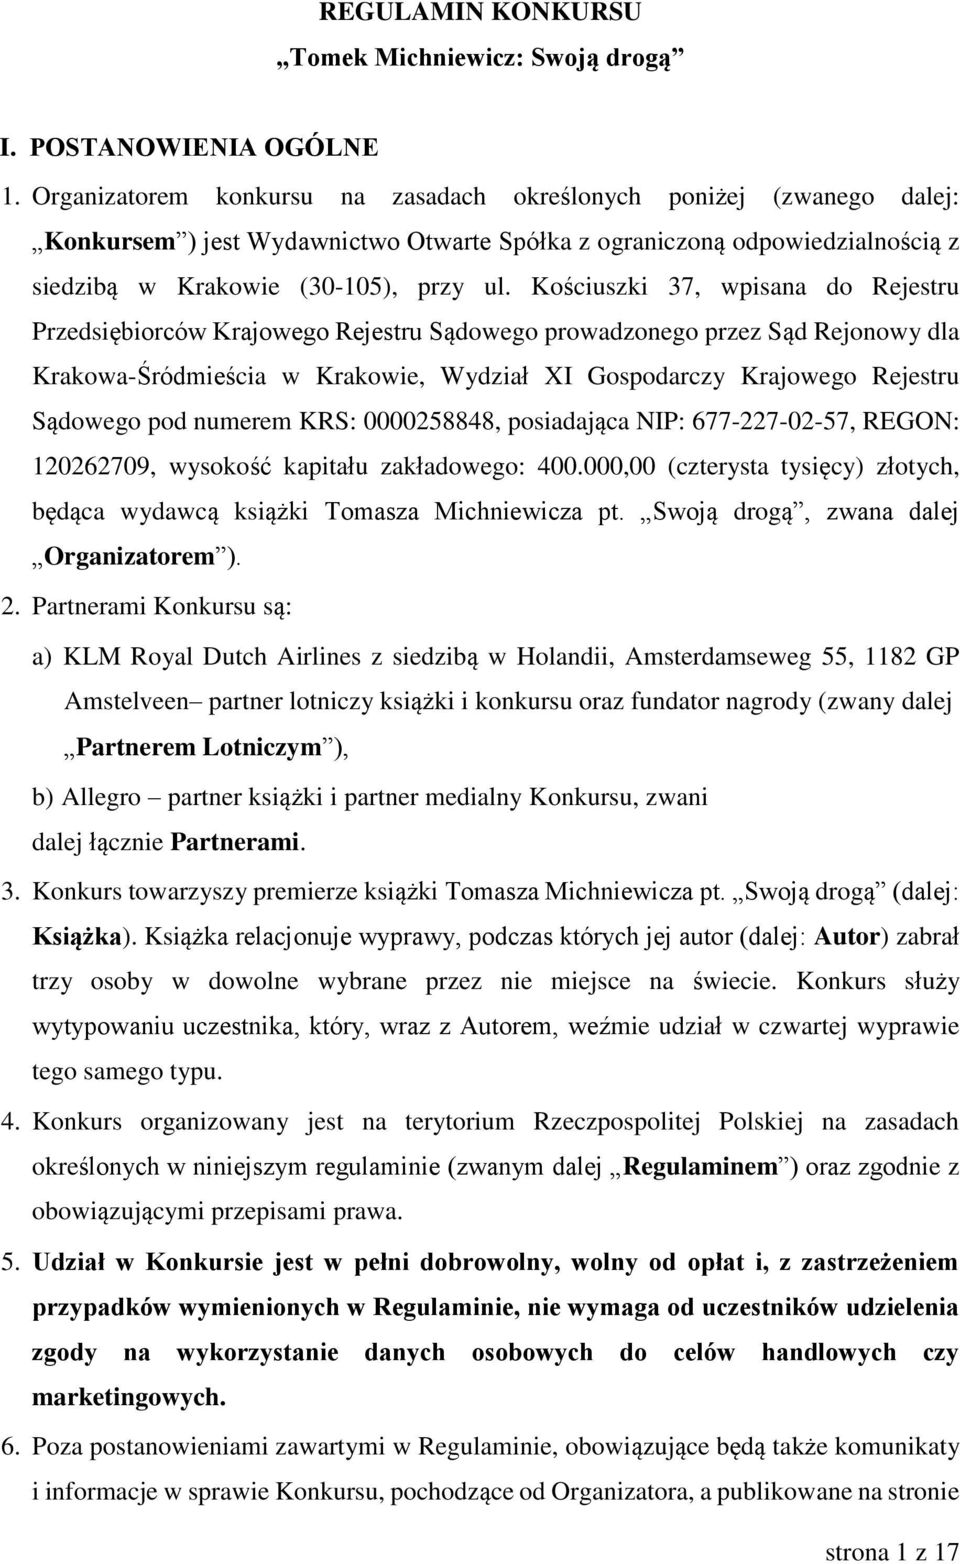 Kościuszki 37, wpisana do Rejestru Przedsiębiorców Krajowego Rejestru Sądowego prowadzonego przez Sąd Rejonowy dla Krakowa-Śródmieścia w Krakowie, Wydział XI Gospodarczy Krajowego Rejestru Sądowego